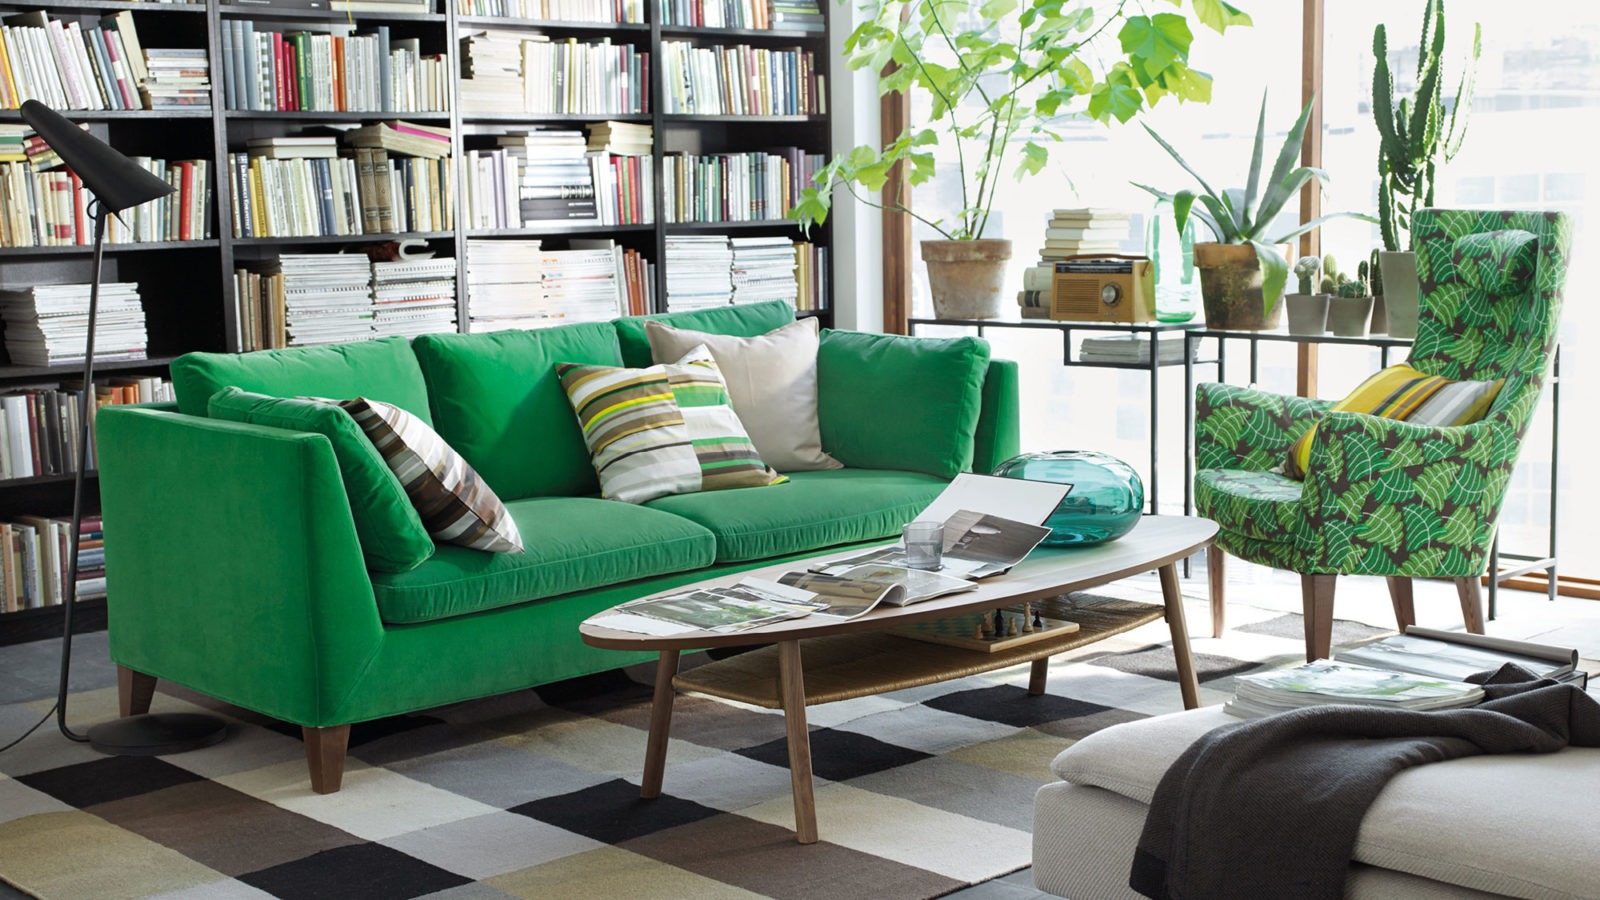 Pièce avec canapé vert et fauteuil à motifs verts autour d’une table basse ovale. Plantes devant une fenêtre ensoleillée.